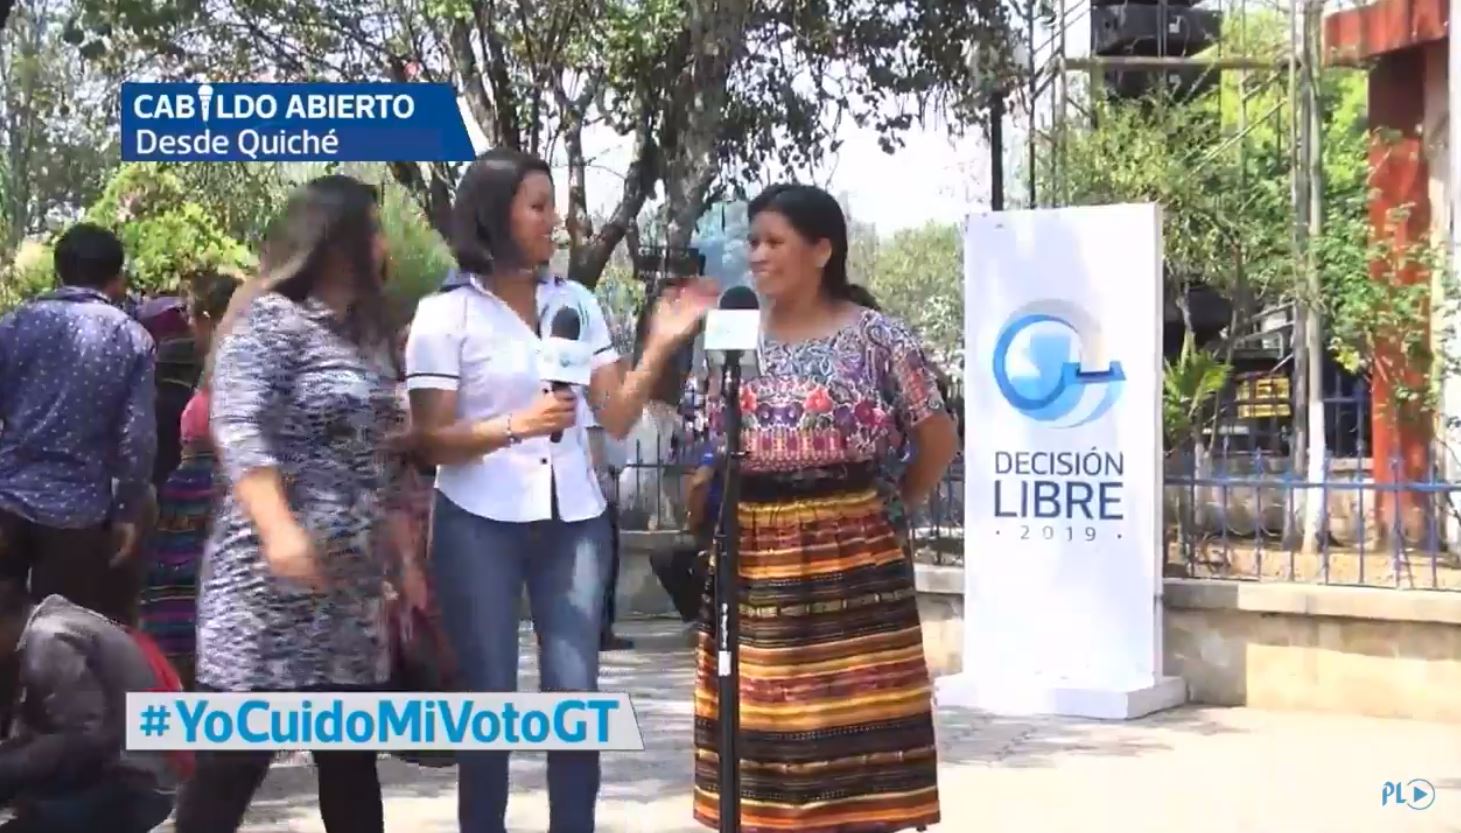 Cabildo Abierto de Prensa Libre y Noticiero Guatevisión se transmitió en directo desde Santa Cruz del Quiché. (Foto Prensa Libre:)